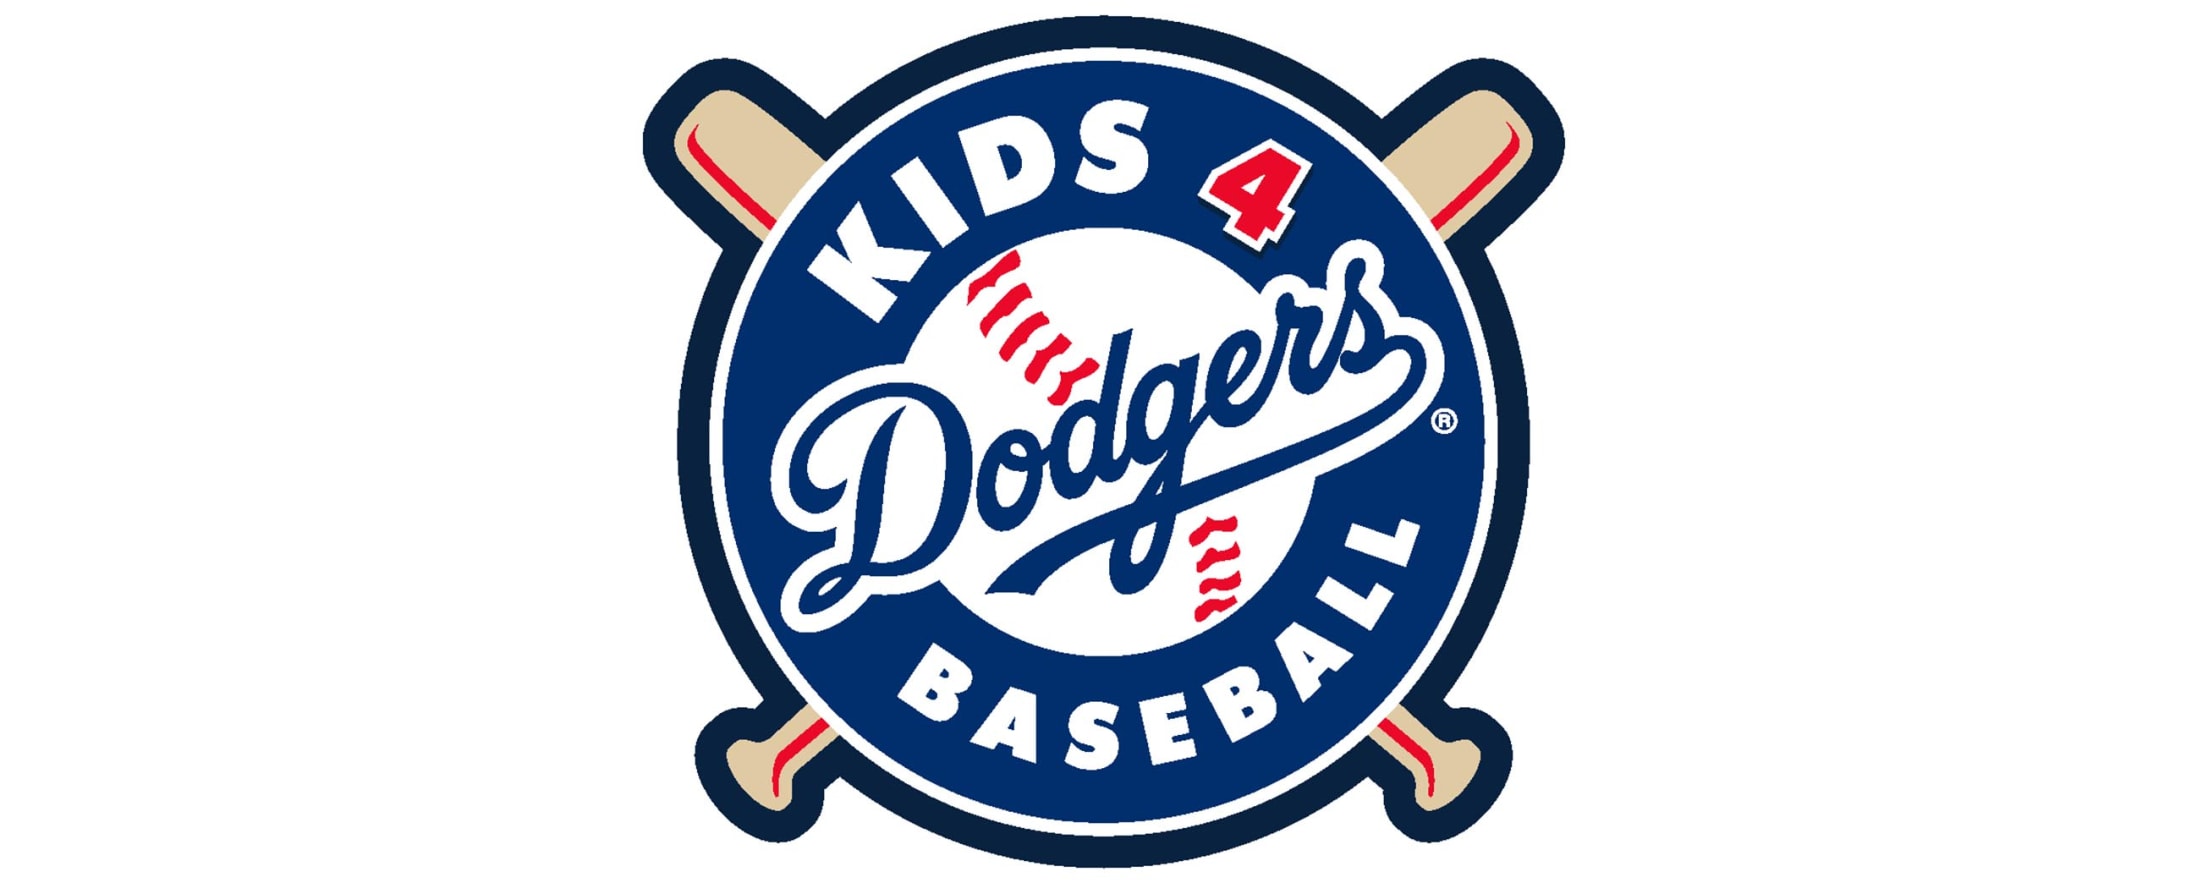 Kids For Dodger Baseball